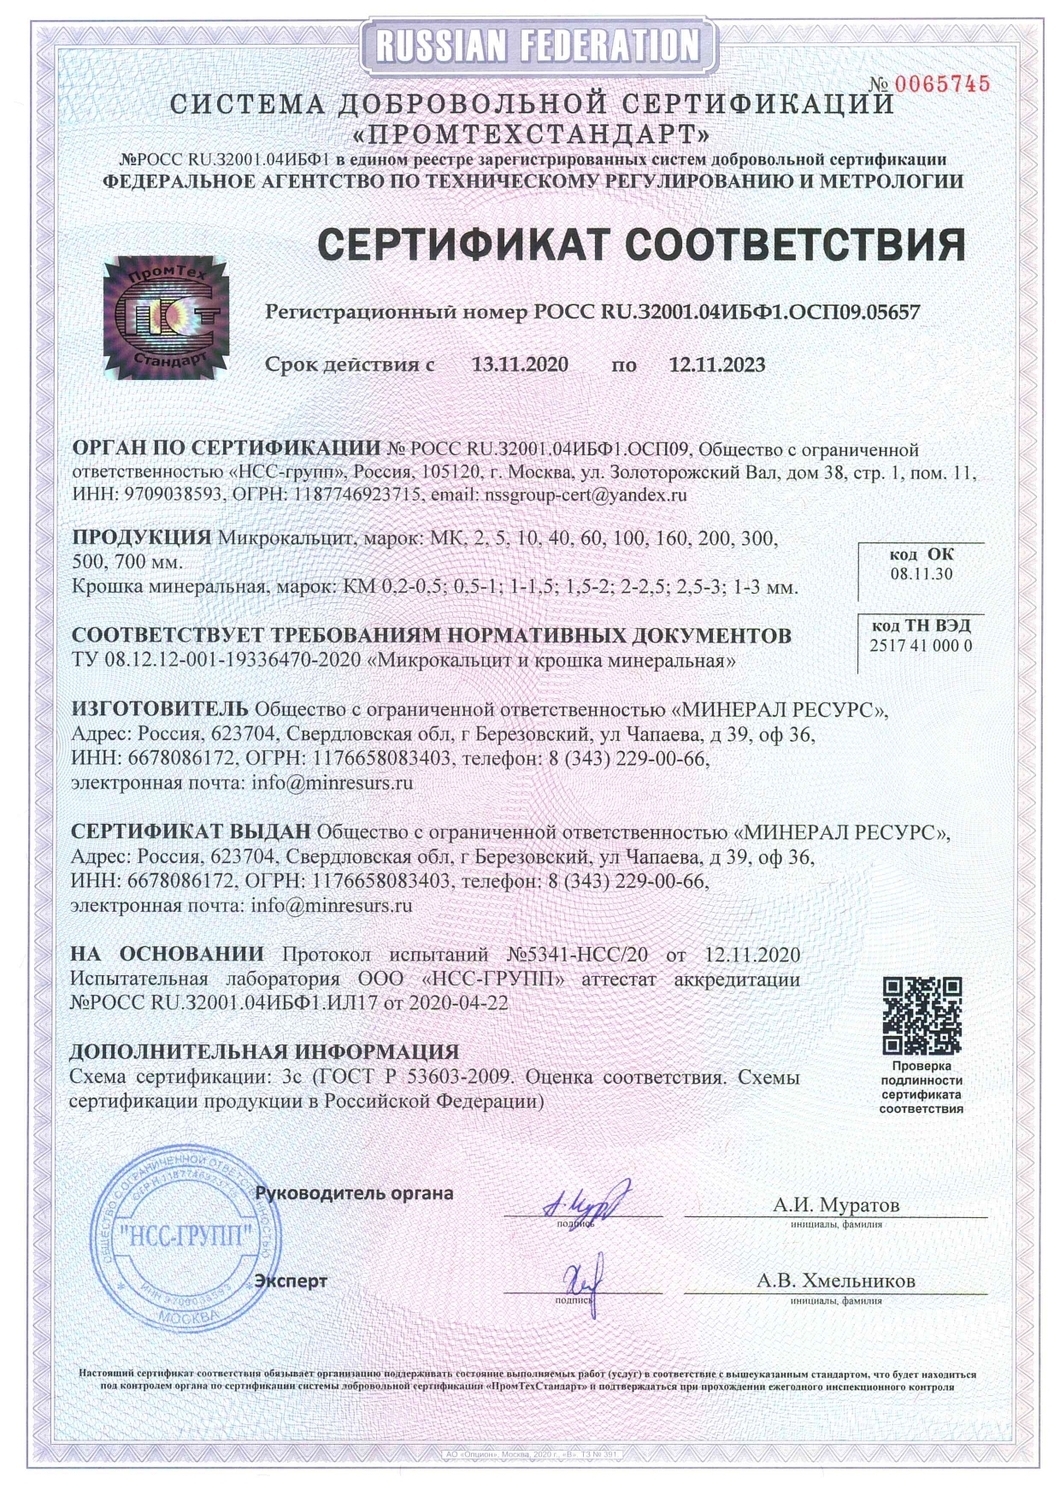 Сертификат соответствия: Мраморная крошка ТУ 08.12.12-001-19336470-2020